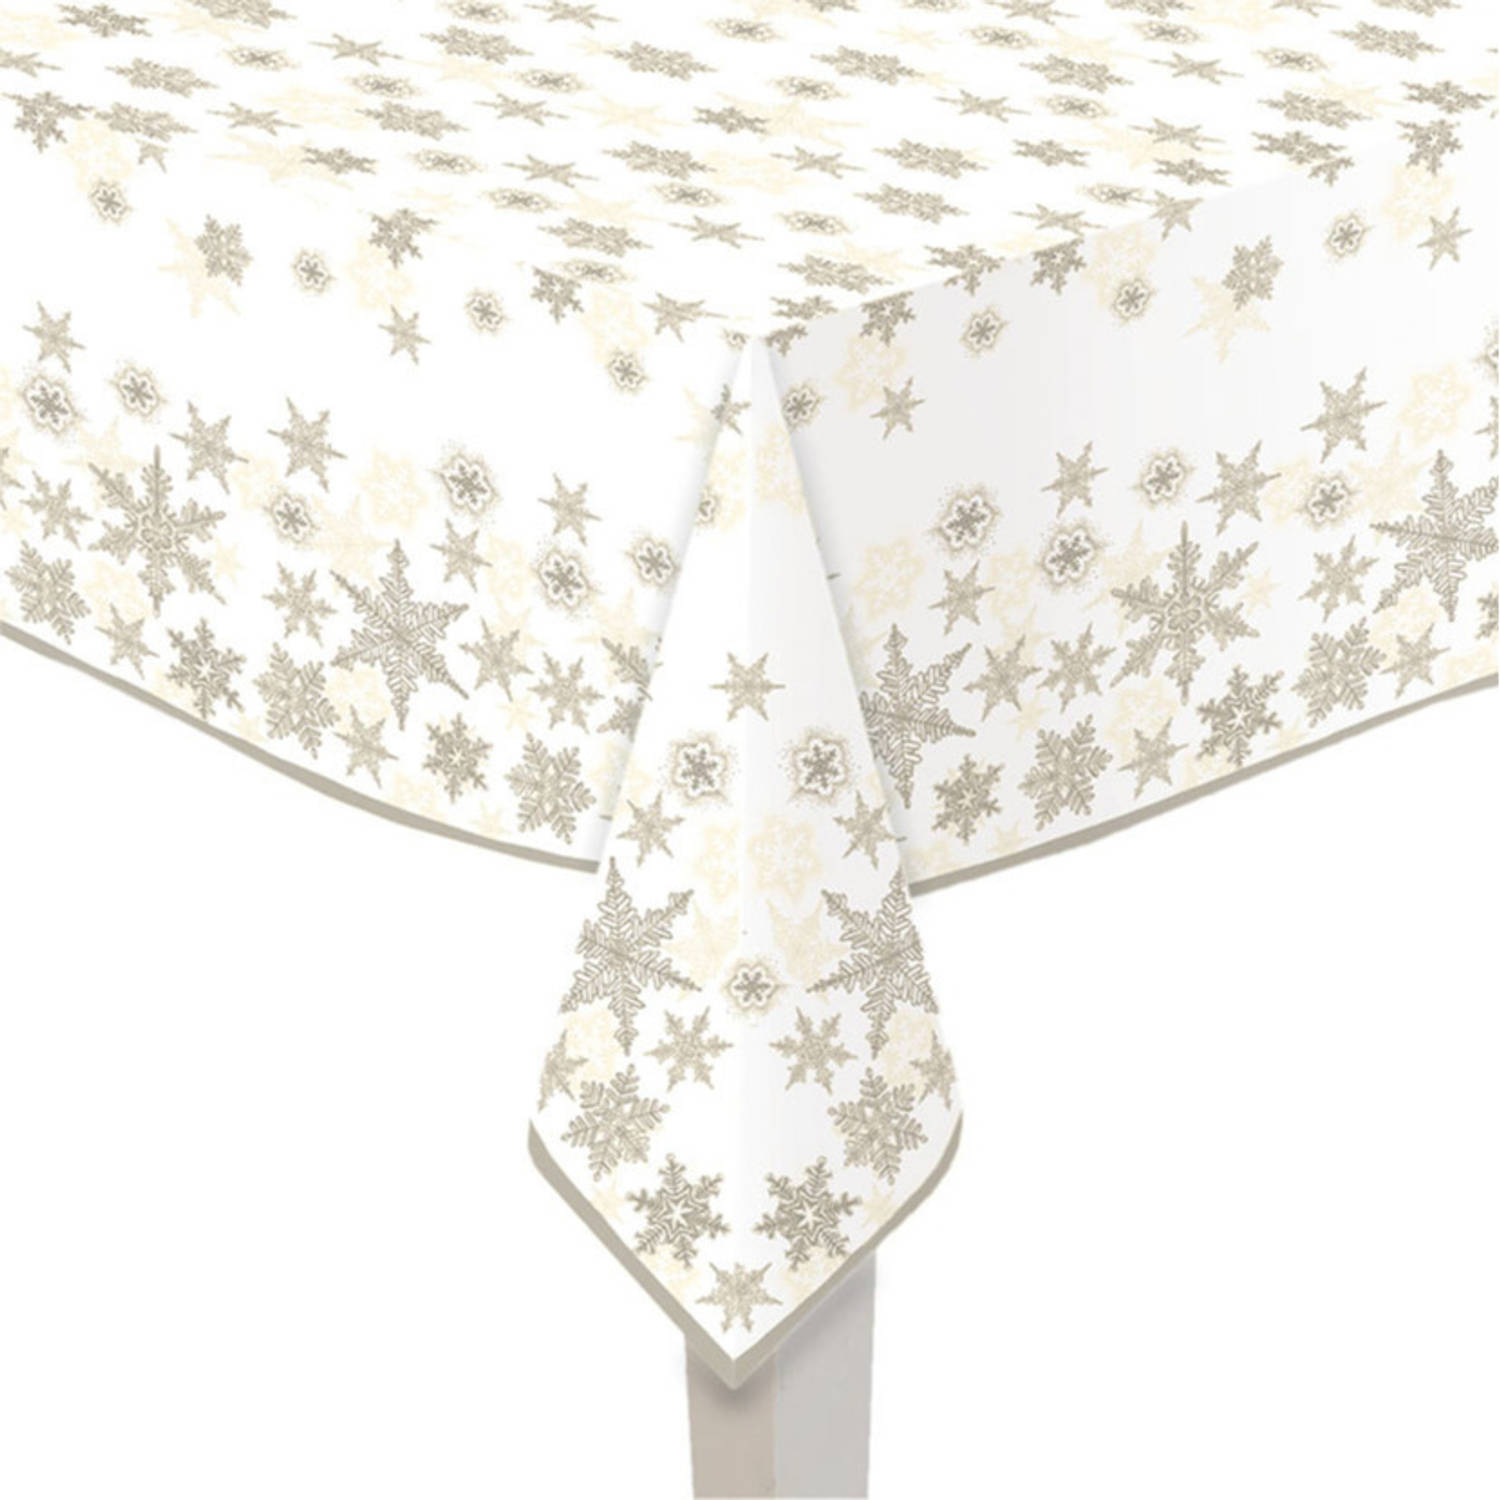 Amazon Jungle Maak los diep Papieren tafelkleden wit met gouden sterren print 120 x 180 cm -  Tafellakens | Blokker